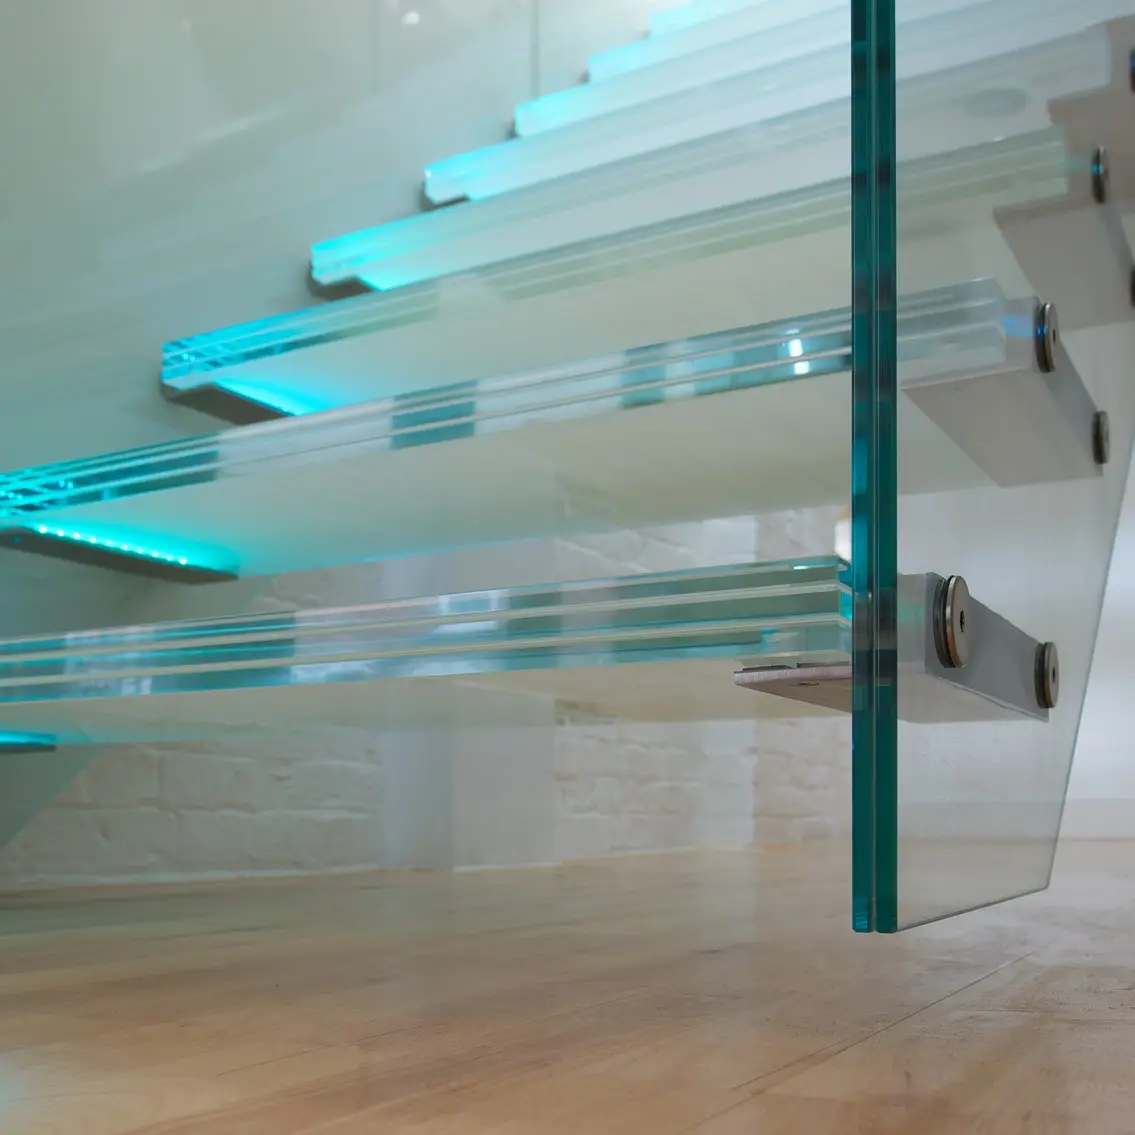 カスタマイズされた建築アートデザインのための耐久性のある強化合わせガラスは、安全性と装飾性を高めます